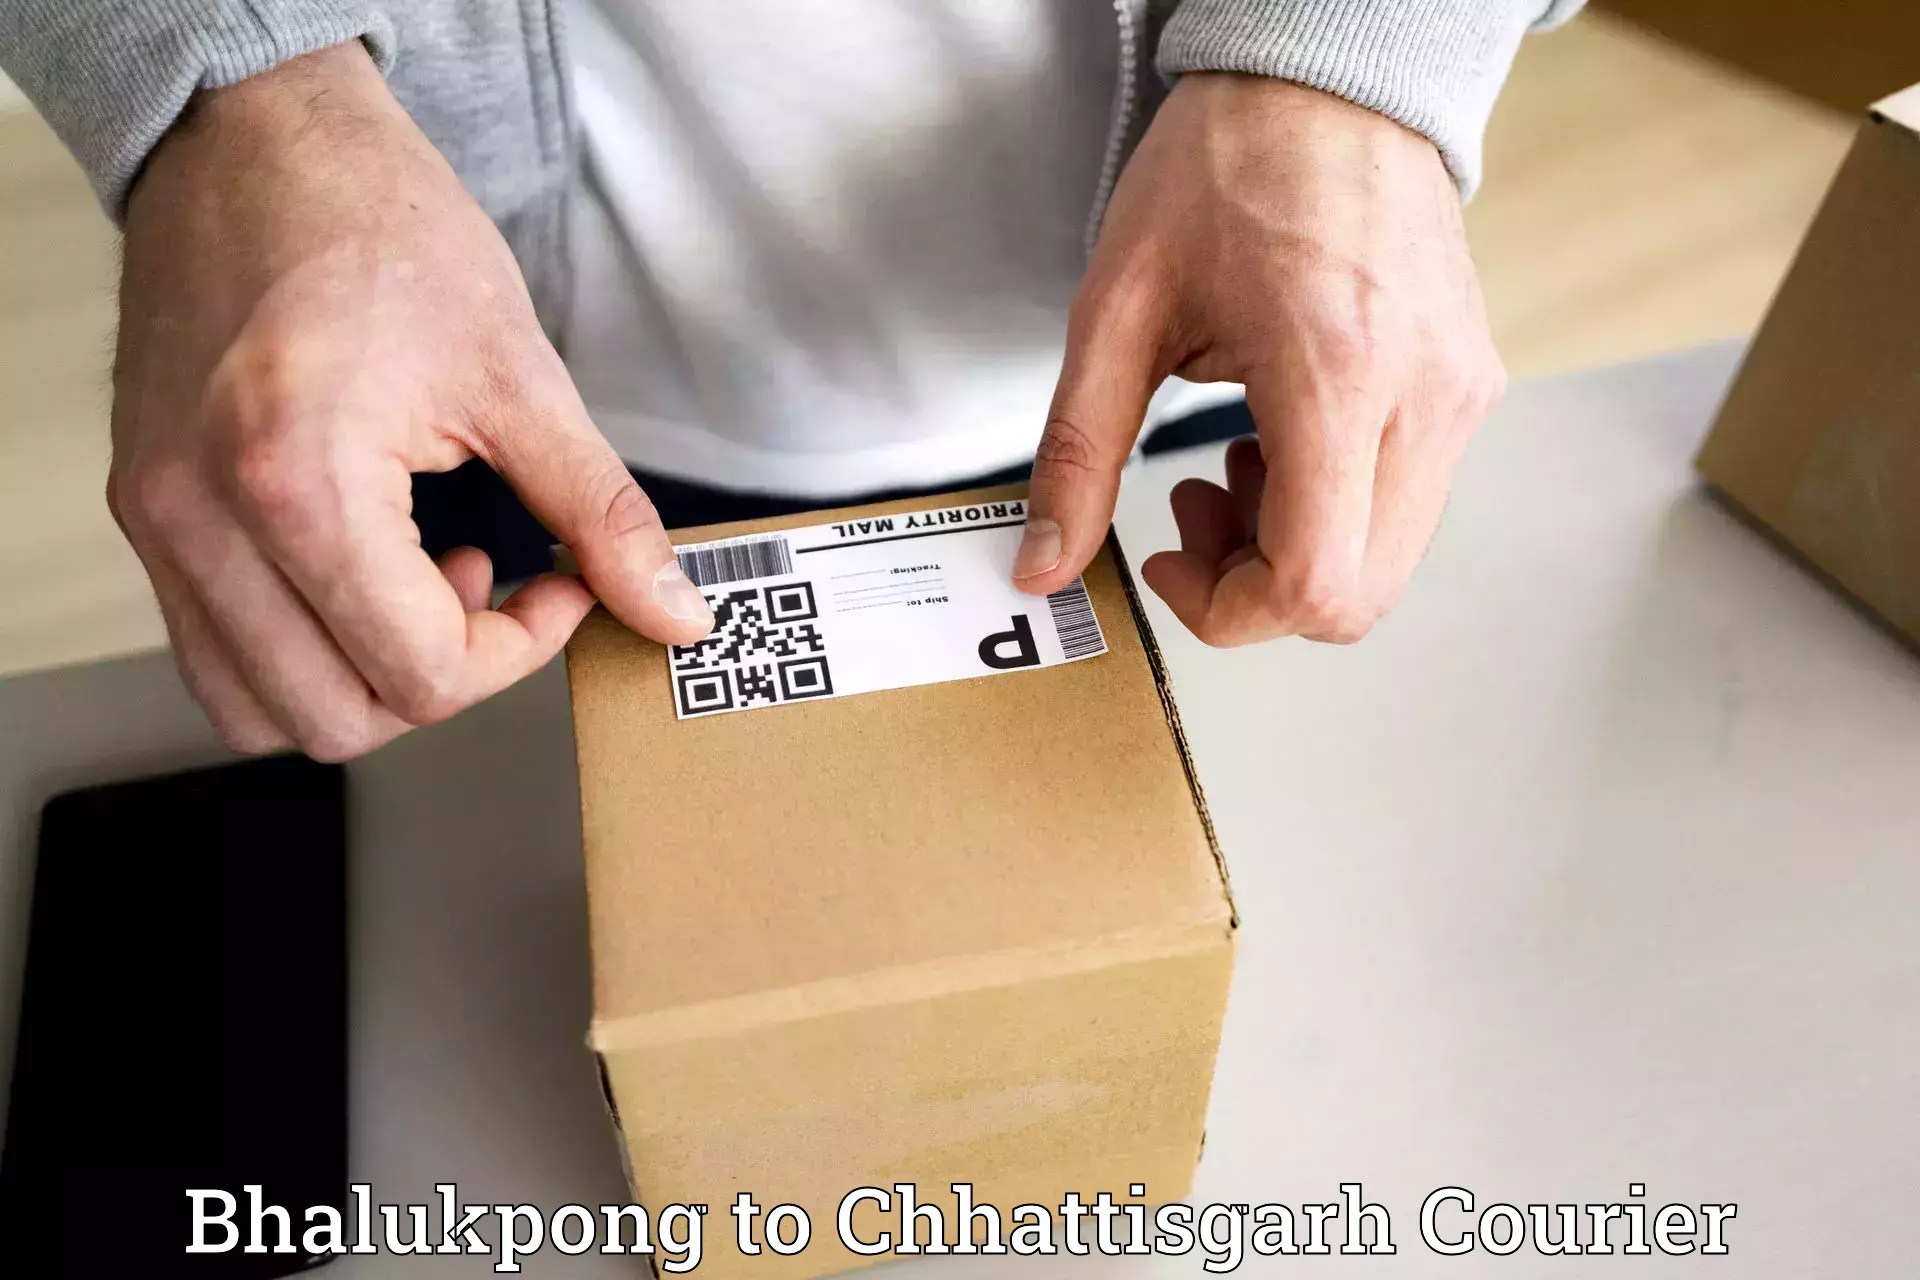 Bulk order courier in Bhalukpong to Bijapur Chhattisgarh